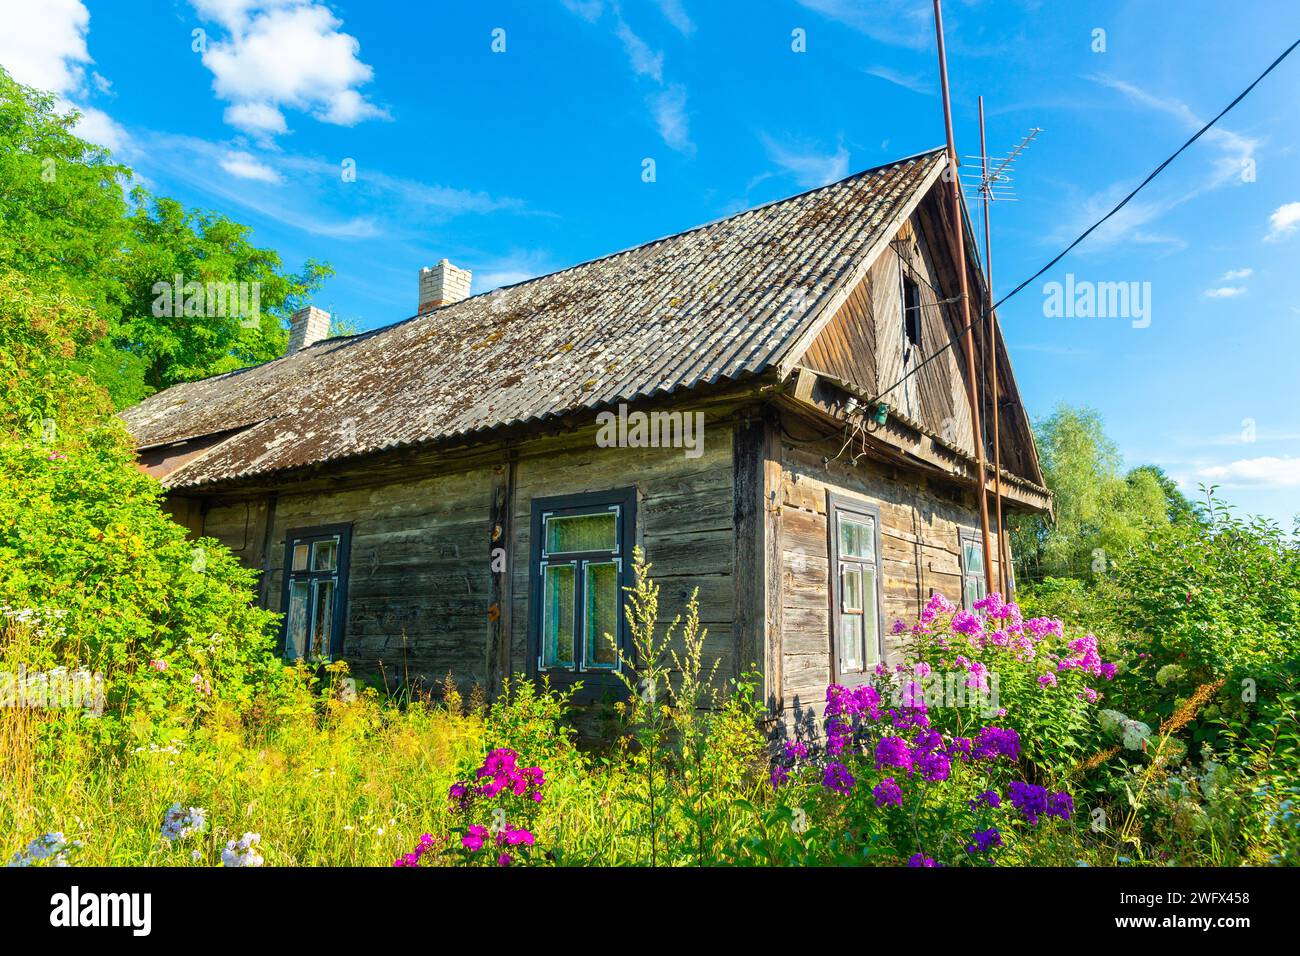 Ein altes verlassenes Holzhaus in der abgelegenen Landschaft in Weißrussland. Es gibt viele Blumen in einem Garten um das Haus herum. Stockfoto